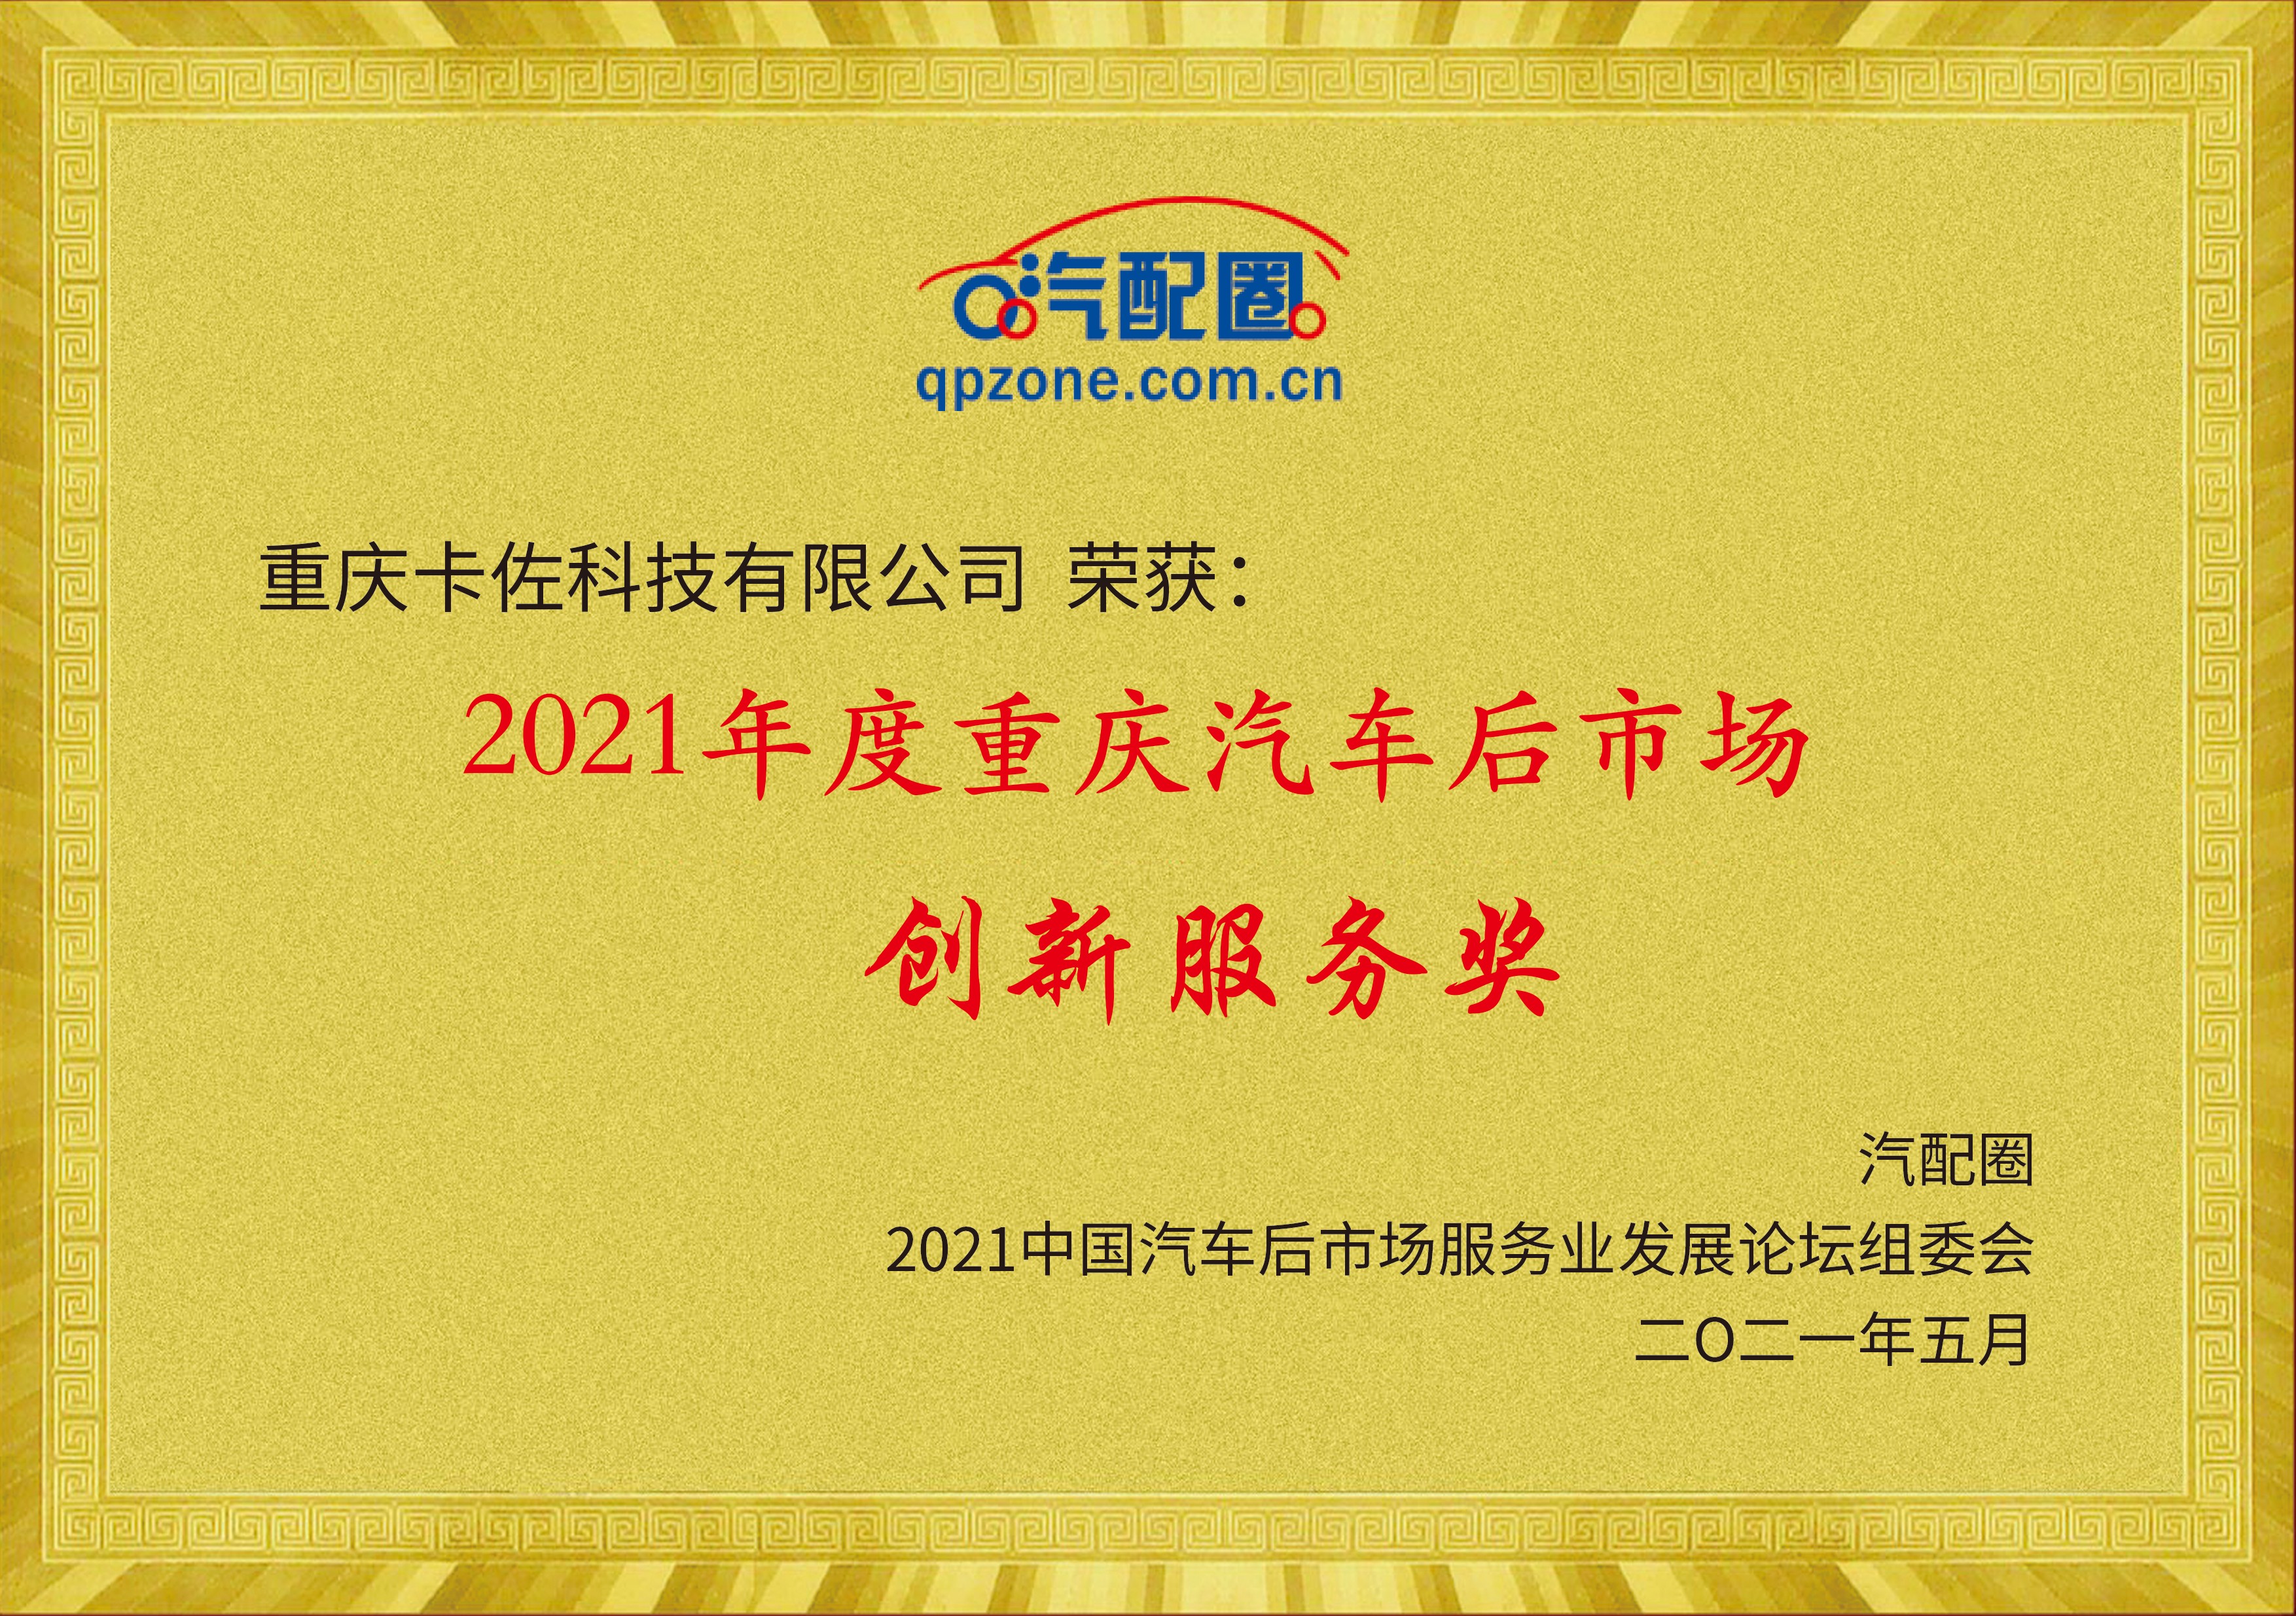 2021年度重庆汽车后市场创新服务奖